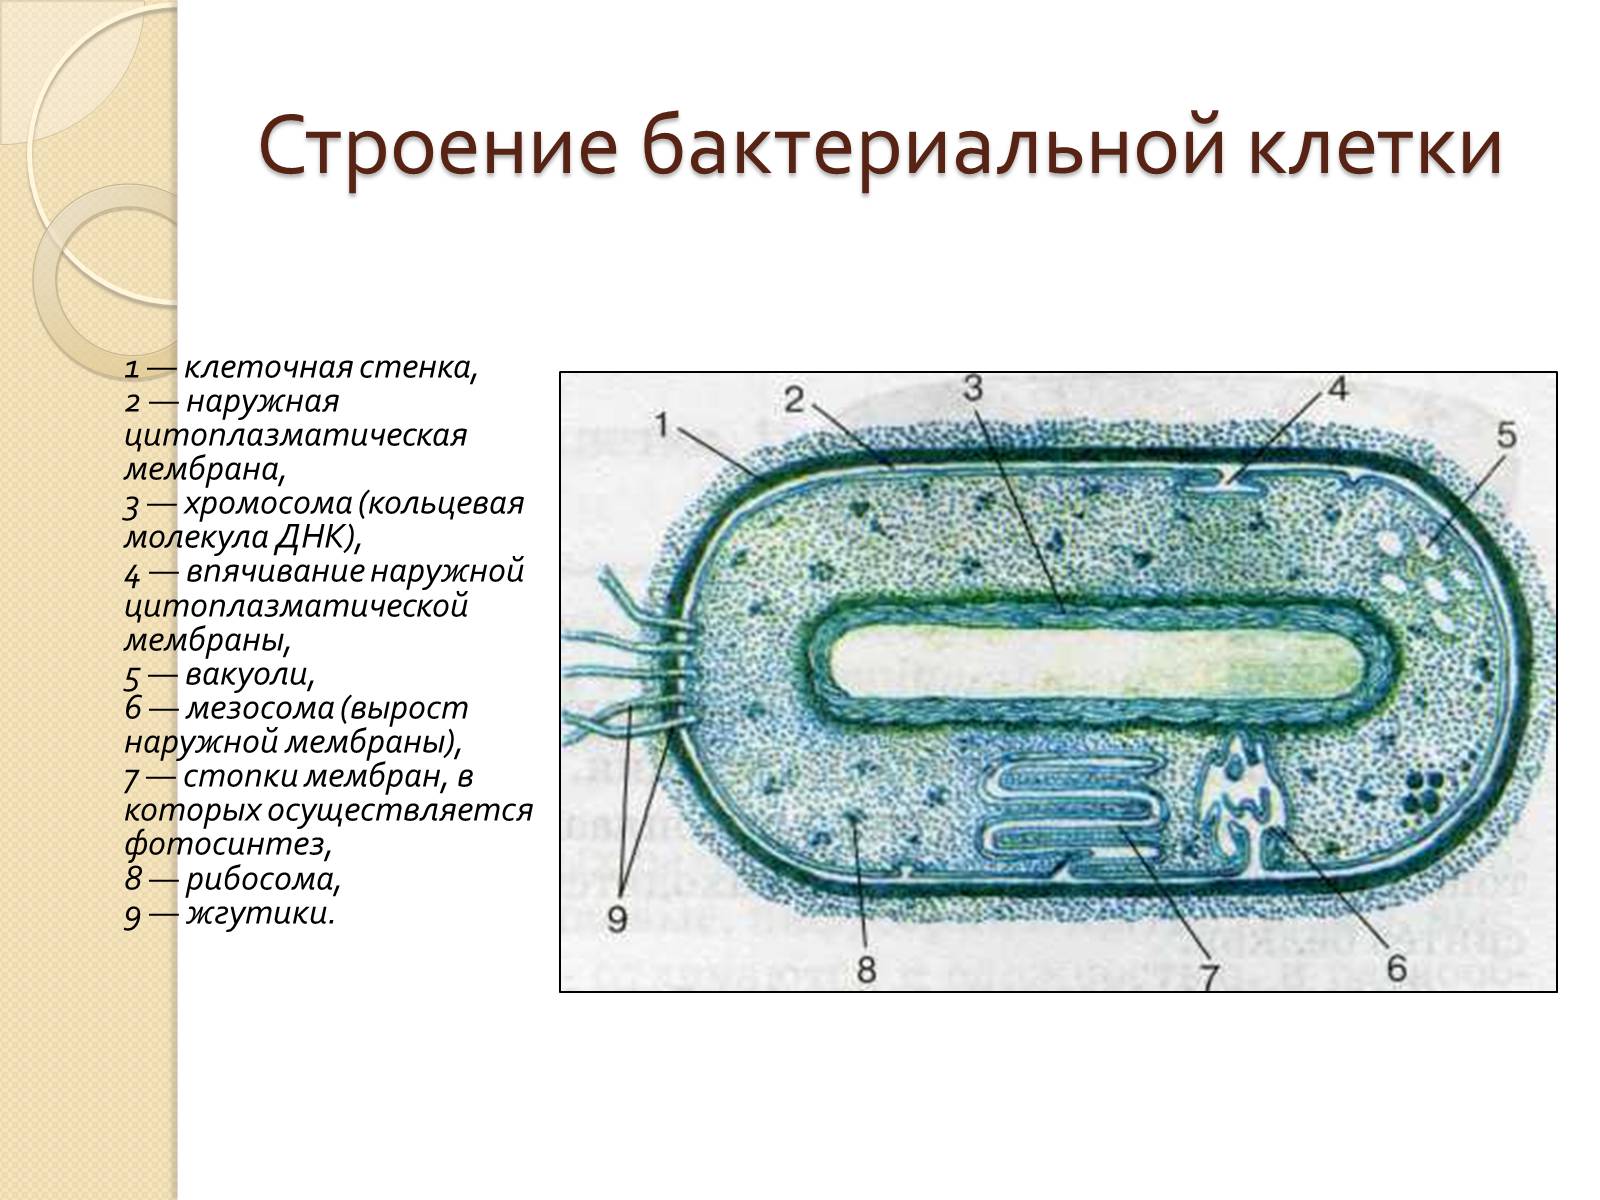 Оболочка прокариотов. Строение прокариотической клетки бактерии. Строение прокариотической бактериальной клетки. Структура строения прокариотической клетки. Строение бактериальной клетки прокариот.